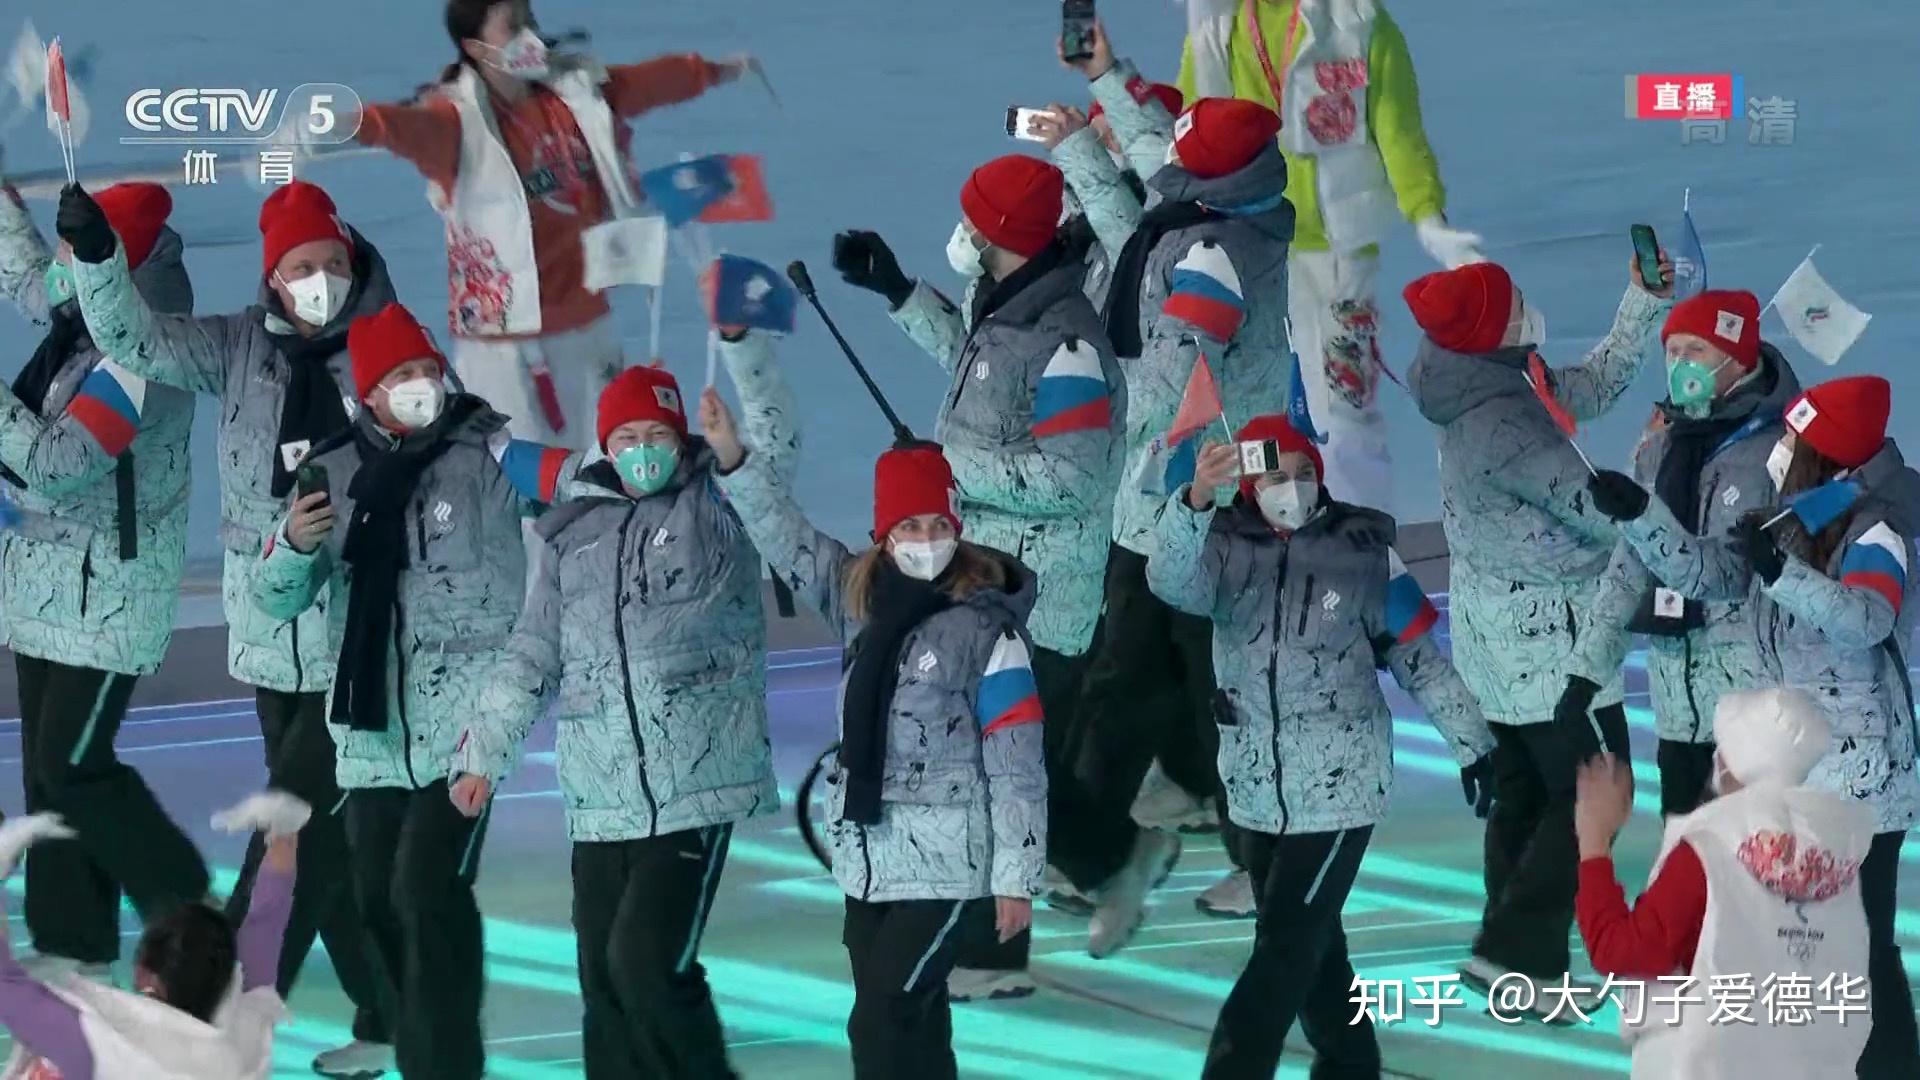 冬奥会代表团服装图片